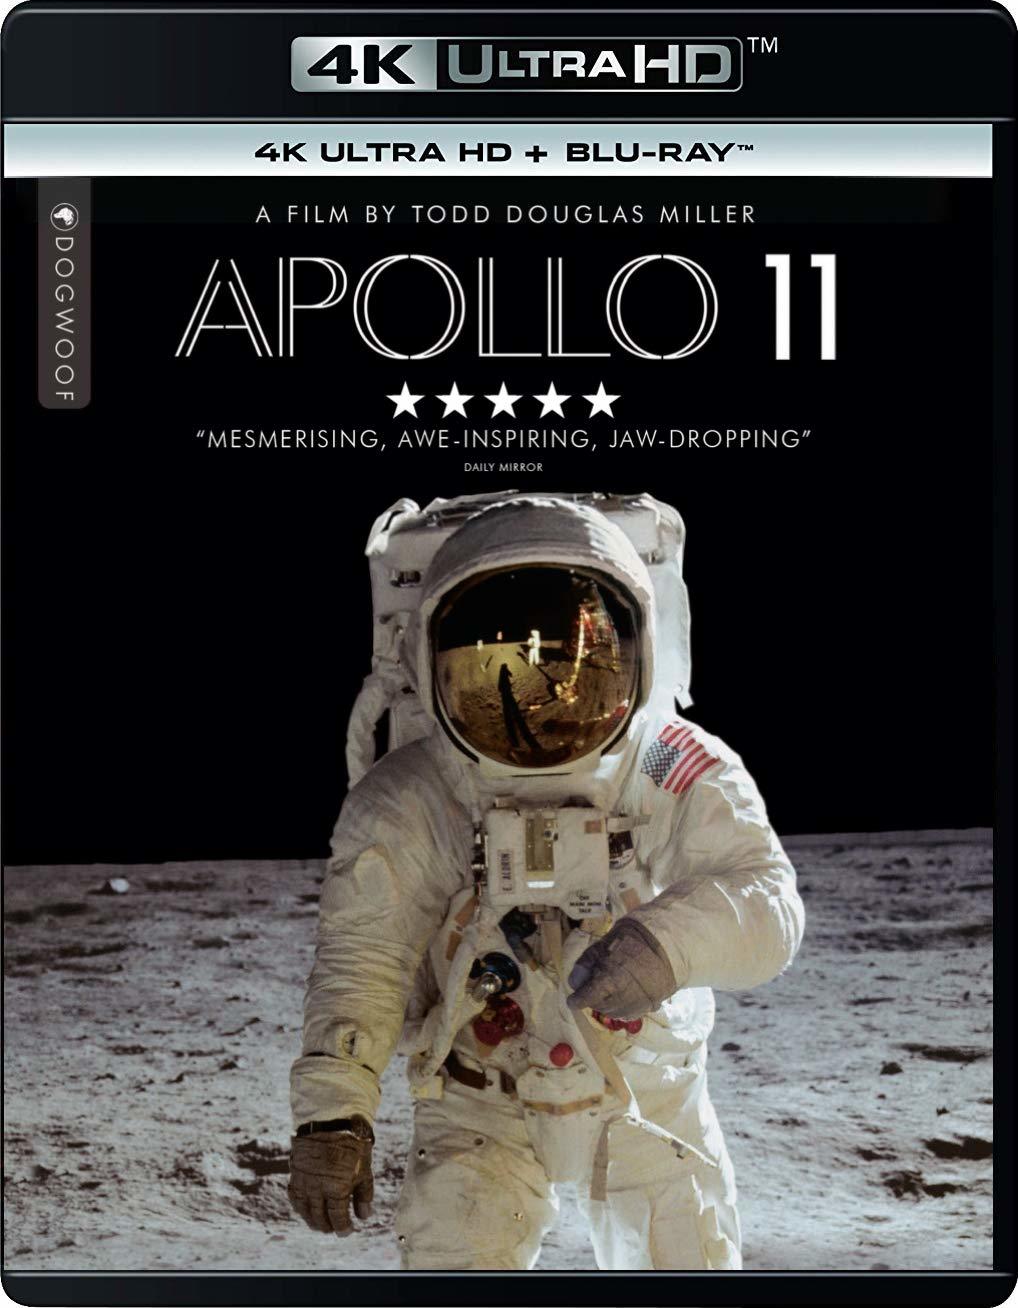 阿波罗11号/阿波罗登月 [4k UHD原盘 DIY简繁英双语字幕 官译简繁字幕].Apollo.11.2019.2160p.UHD.Blu-ray.HEVC.DTS-HD.MA.5.1-TAG 70.46GB-1.jpg